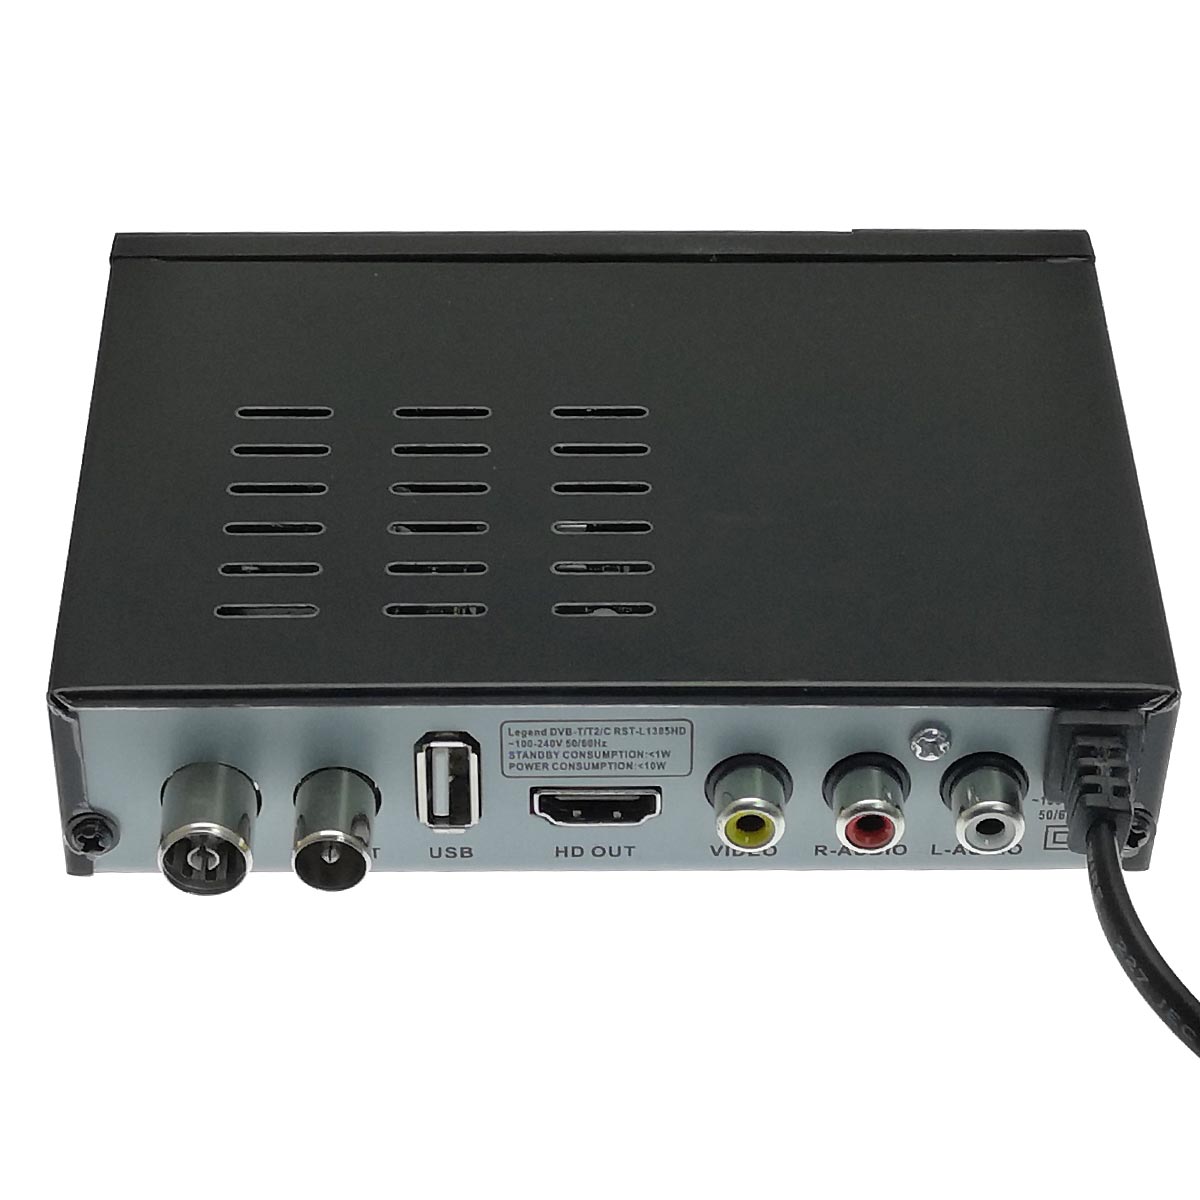 Цифровой эфирный приёмник, ТВ приставка DVB-T2 LEGEND RST-L1305HD